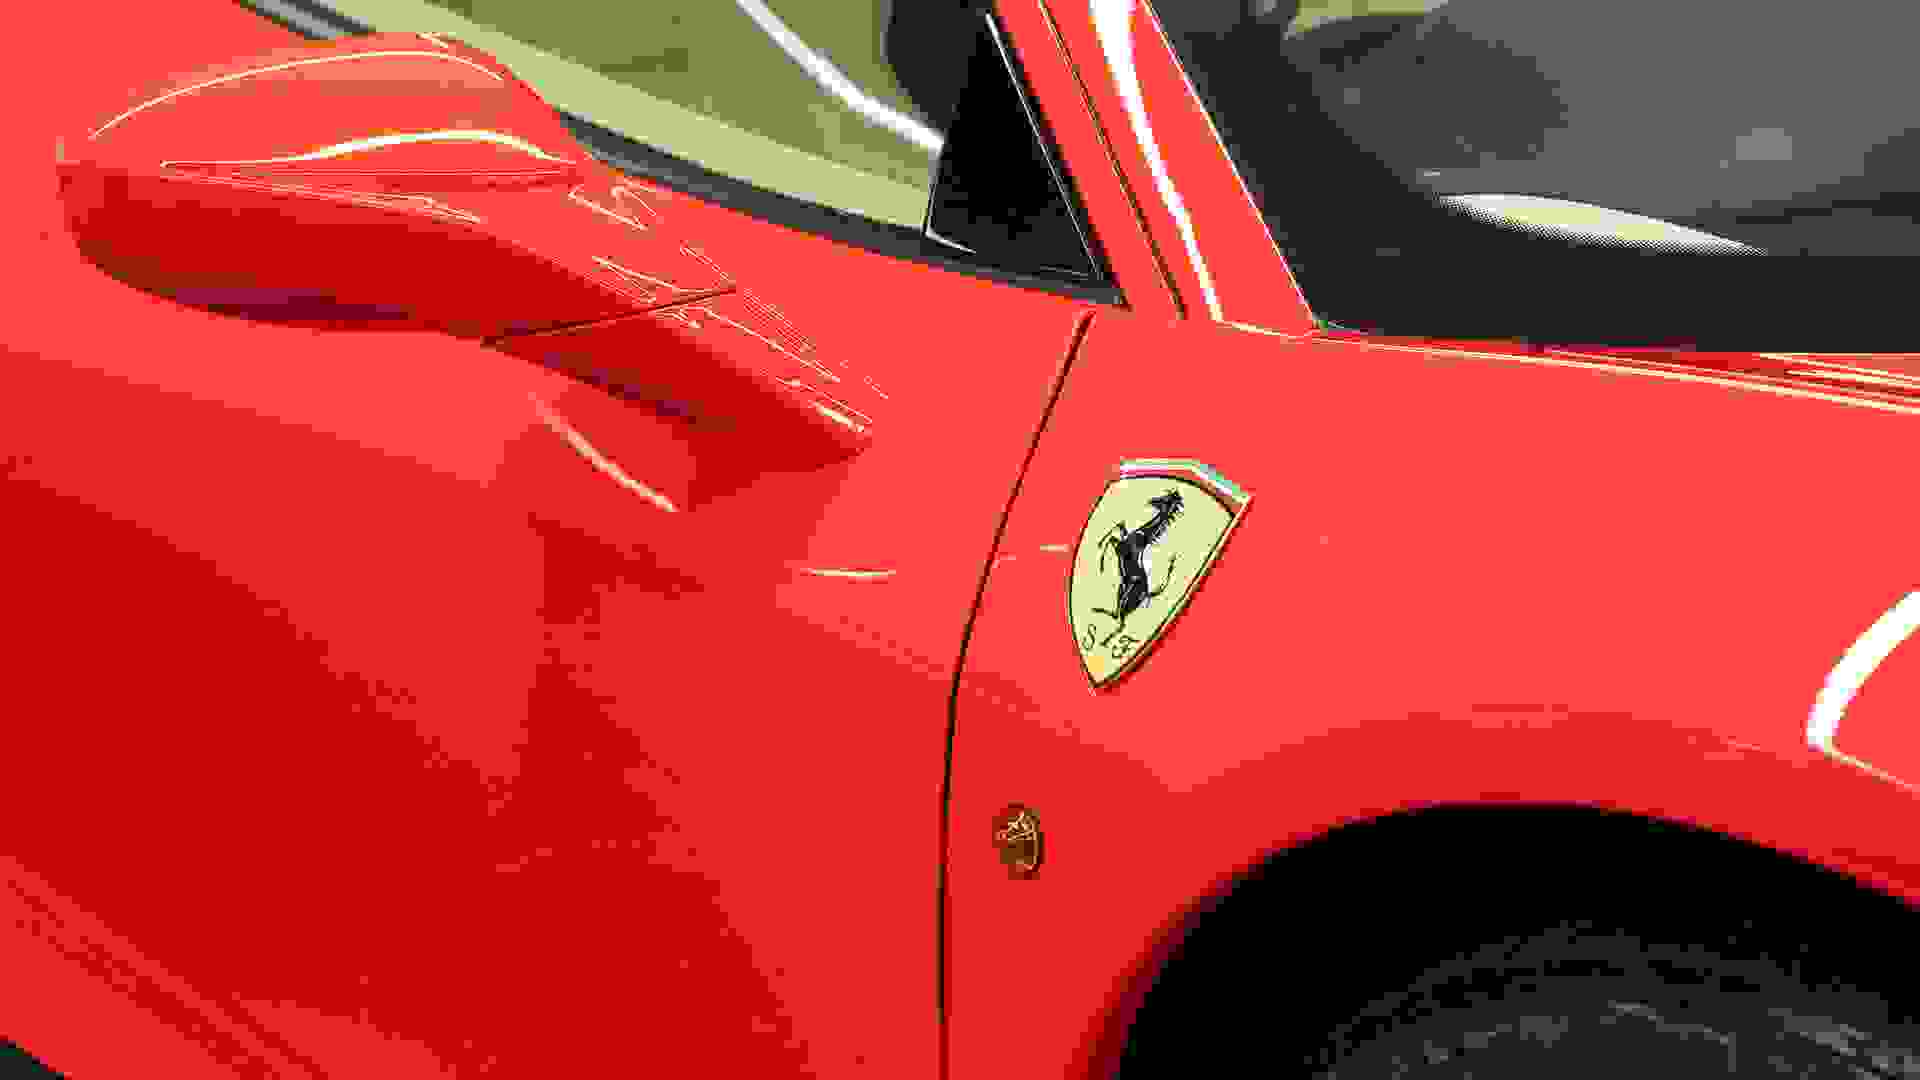 Ferrari 458 Photo 1efd3b72-236c-49eb-9fa3-1f73267fff23.jpg